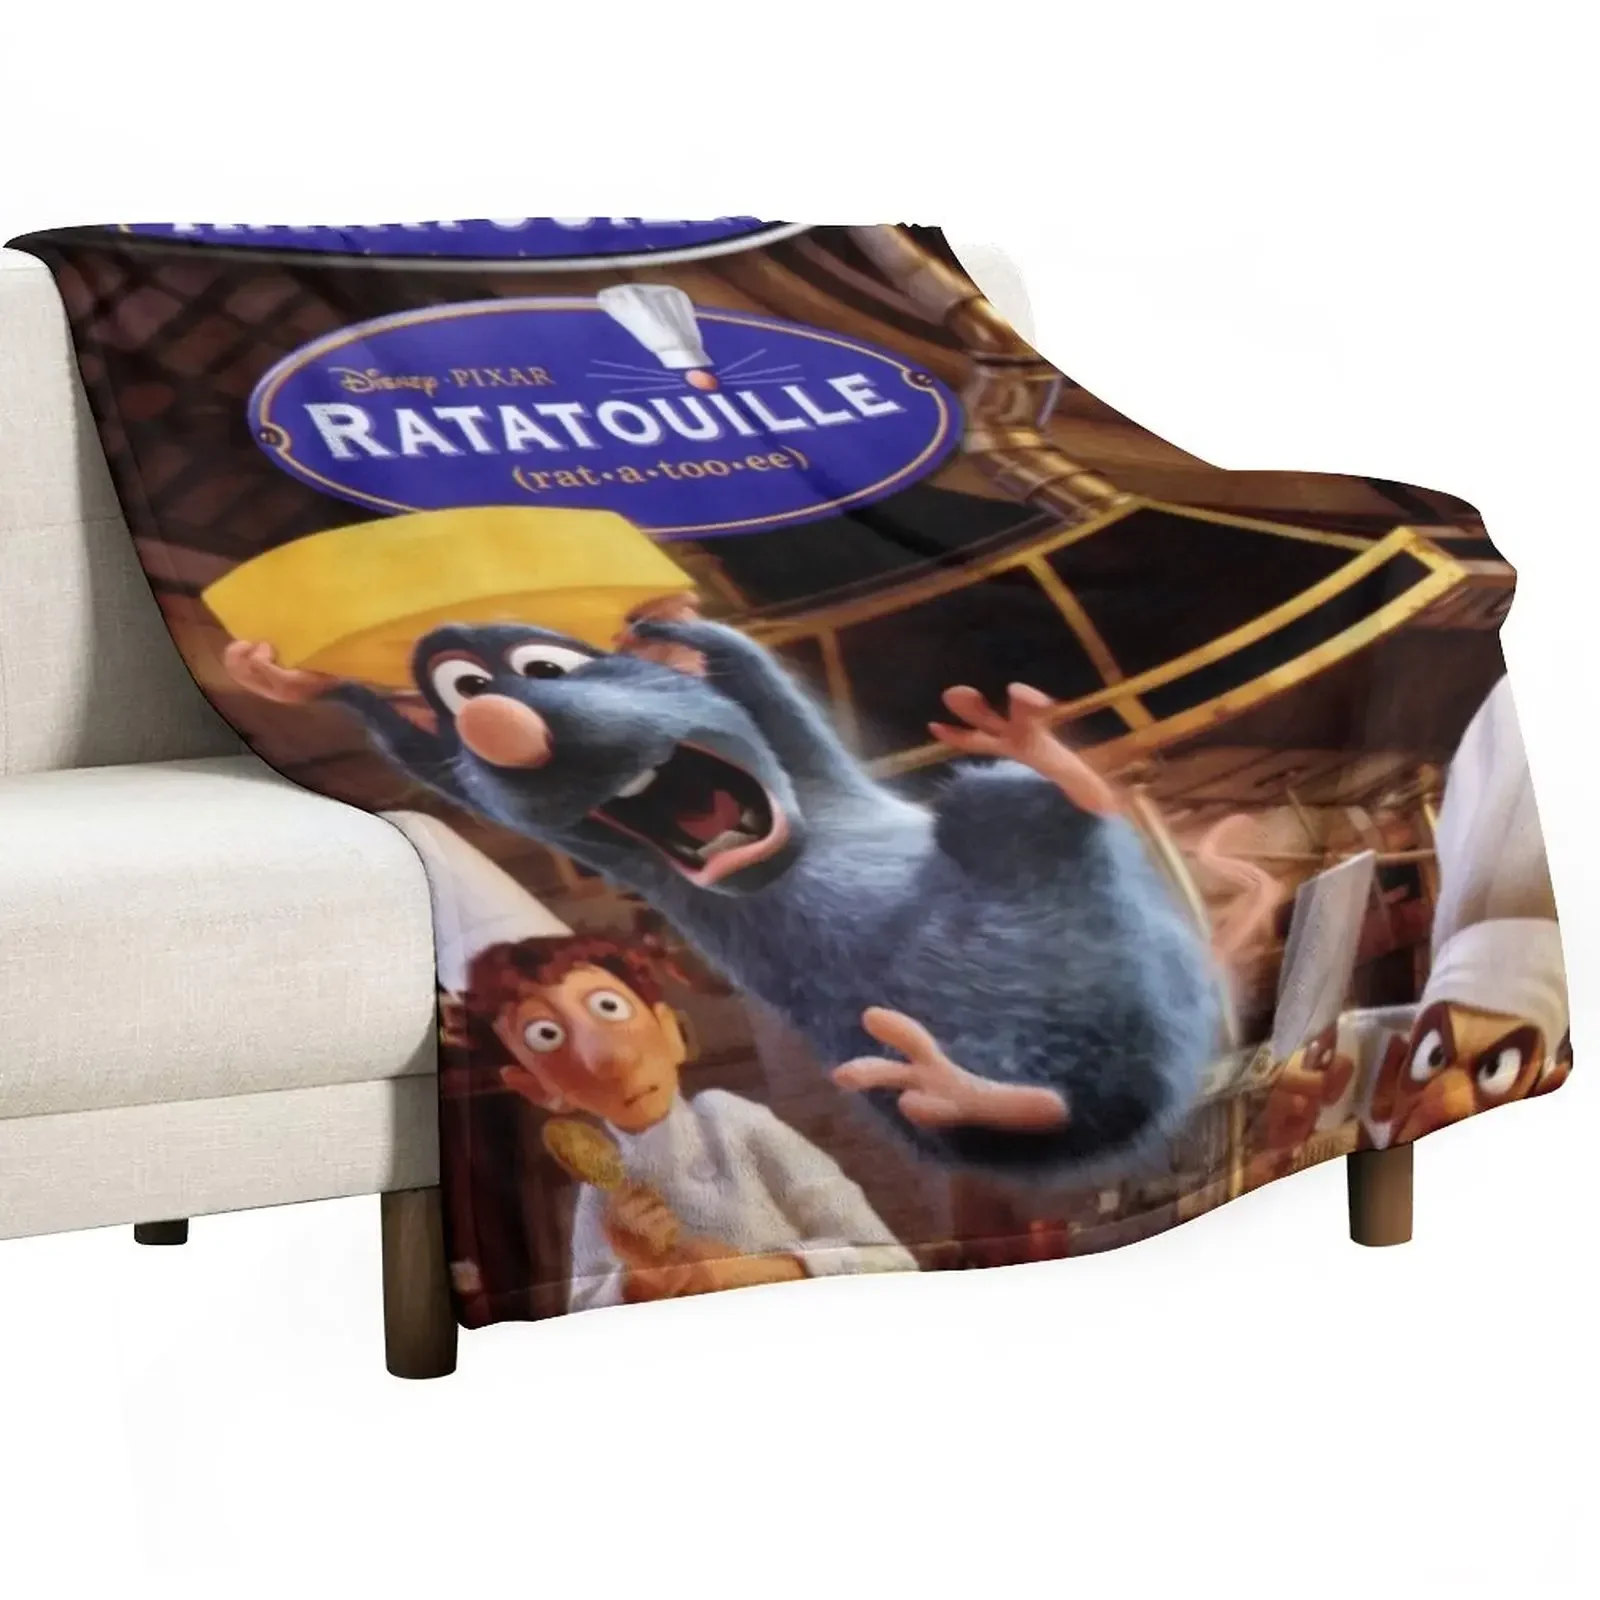 

Threrat 2007 американская комедия фильм крыса a too ee плед одеяло детские одеяла палочки большие пушистые одеяла